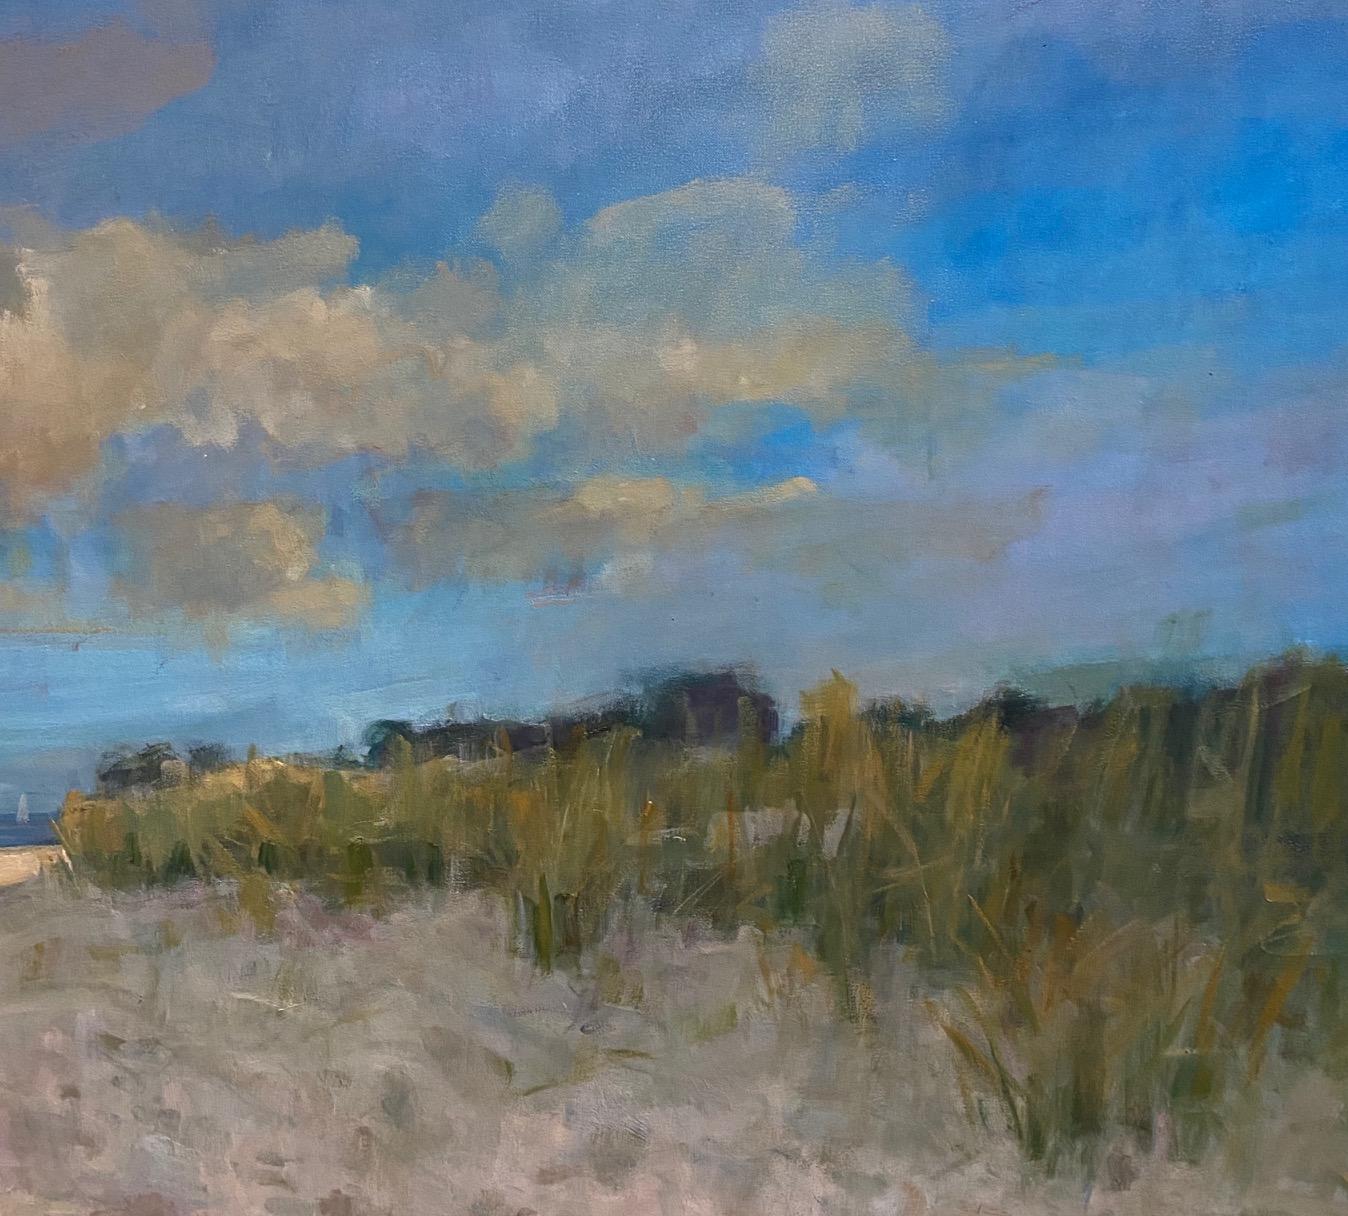 Beach in Midsummer, original 36x48iimpressionist marine landscape - Blue Landscape Painting by Bart DeCeglie